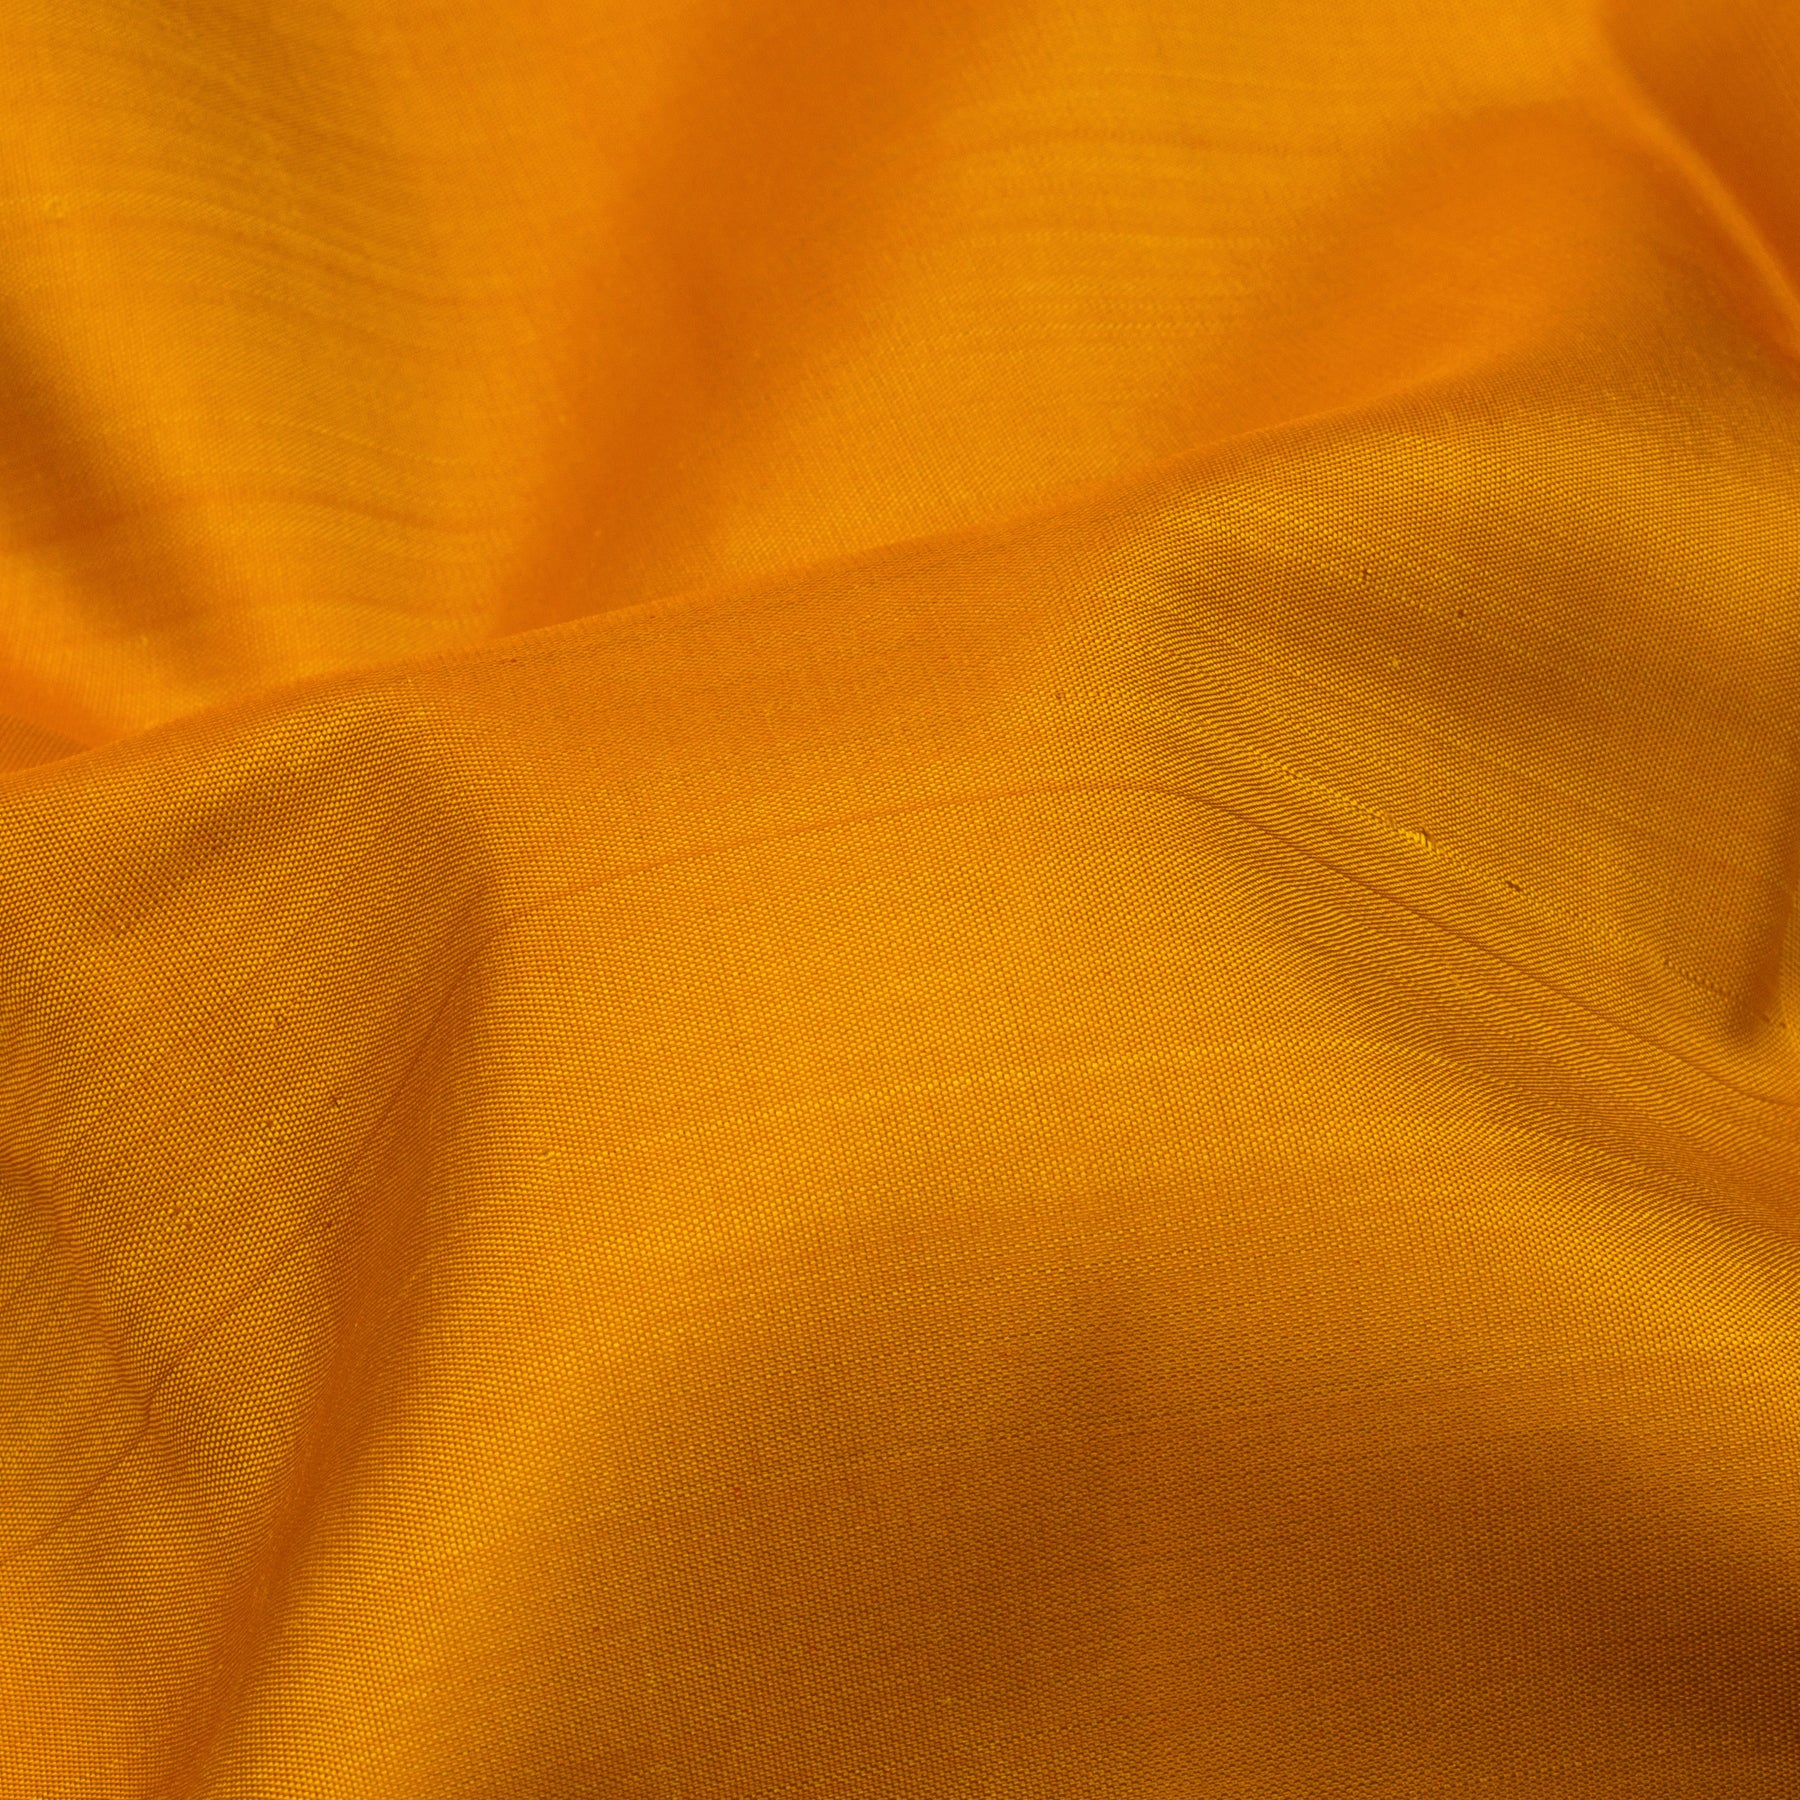 Kanakavalli Kanjivaram Silk Sari 23-595-HS001-10689 - Fabric View